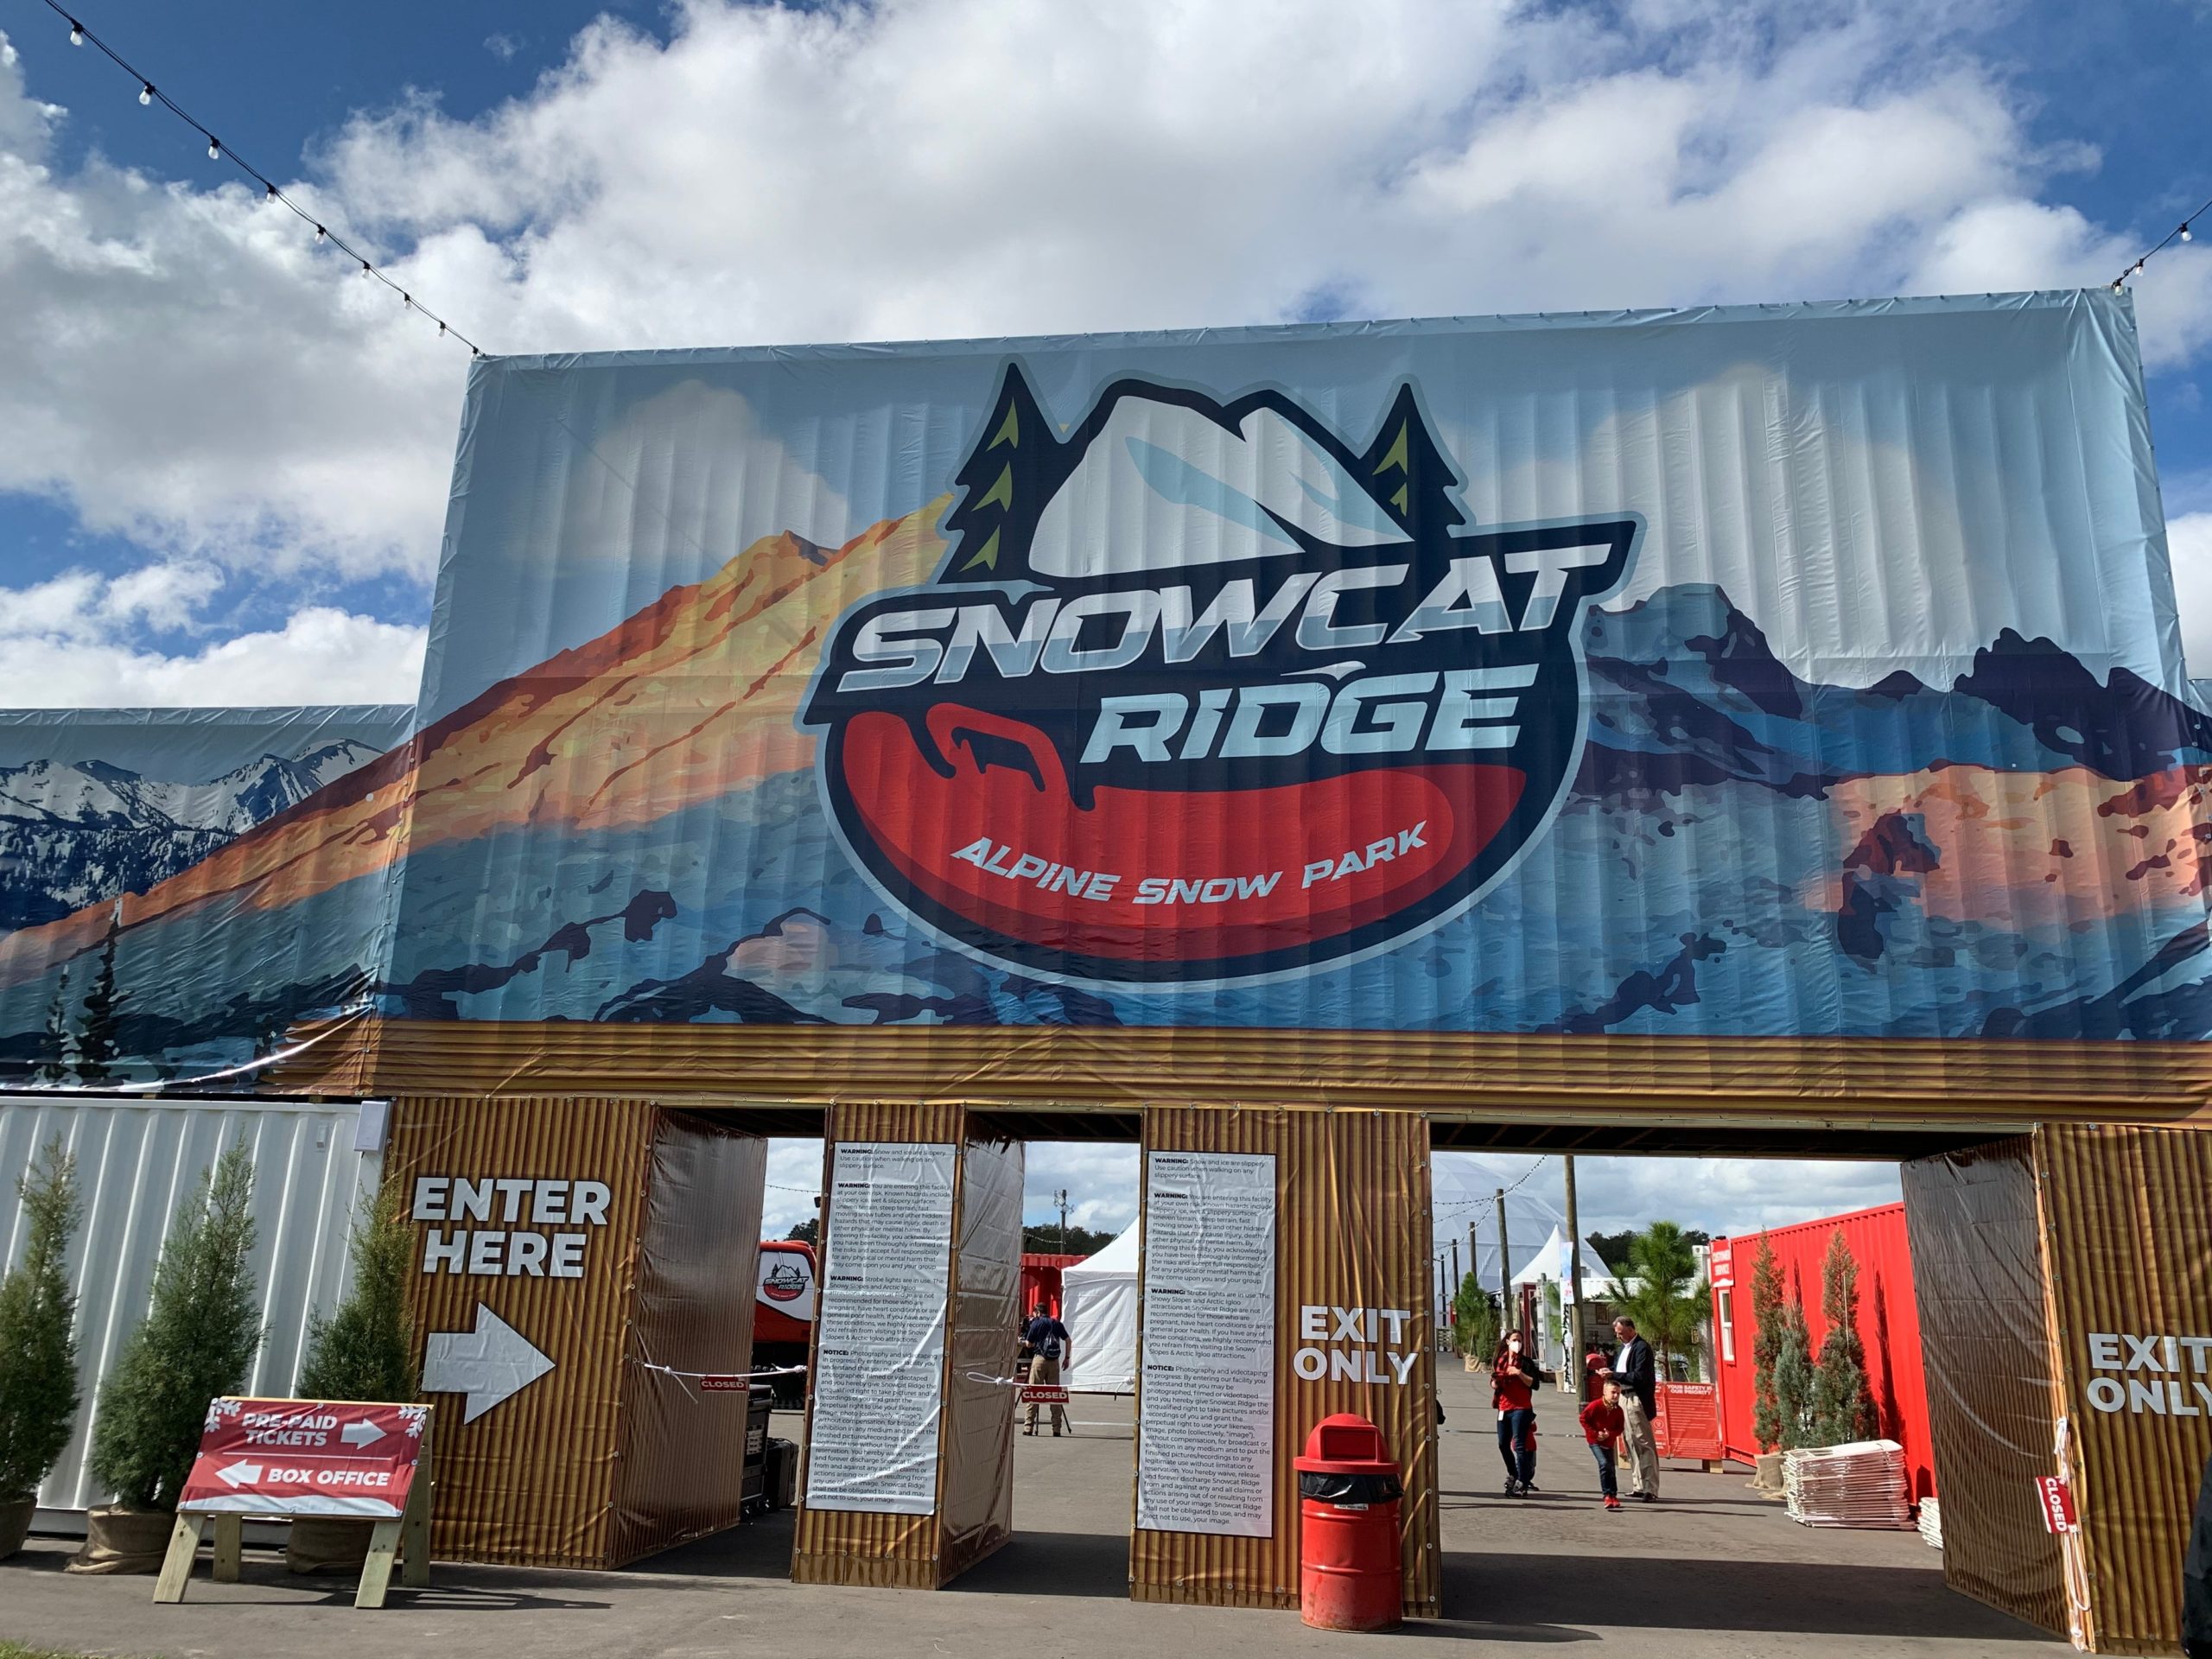 5 Things to Do at Dade City's Snowcat Ridge Alpine Snow Park